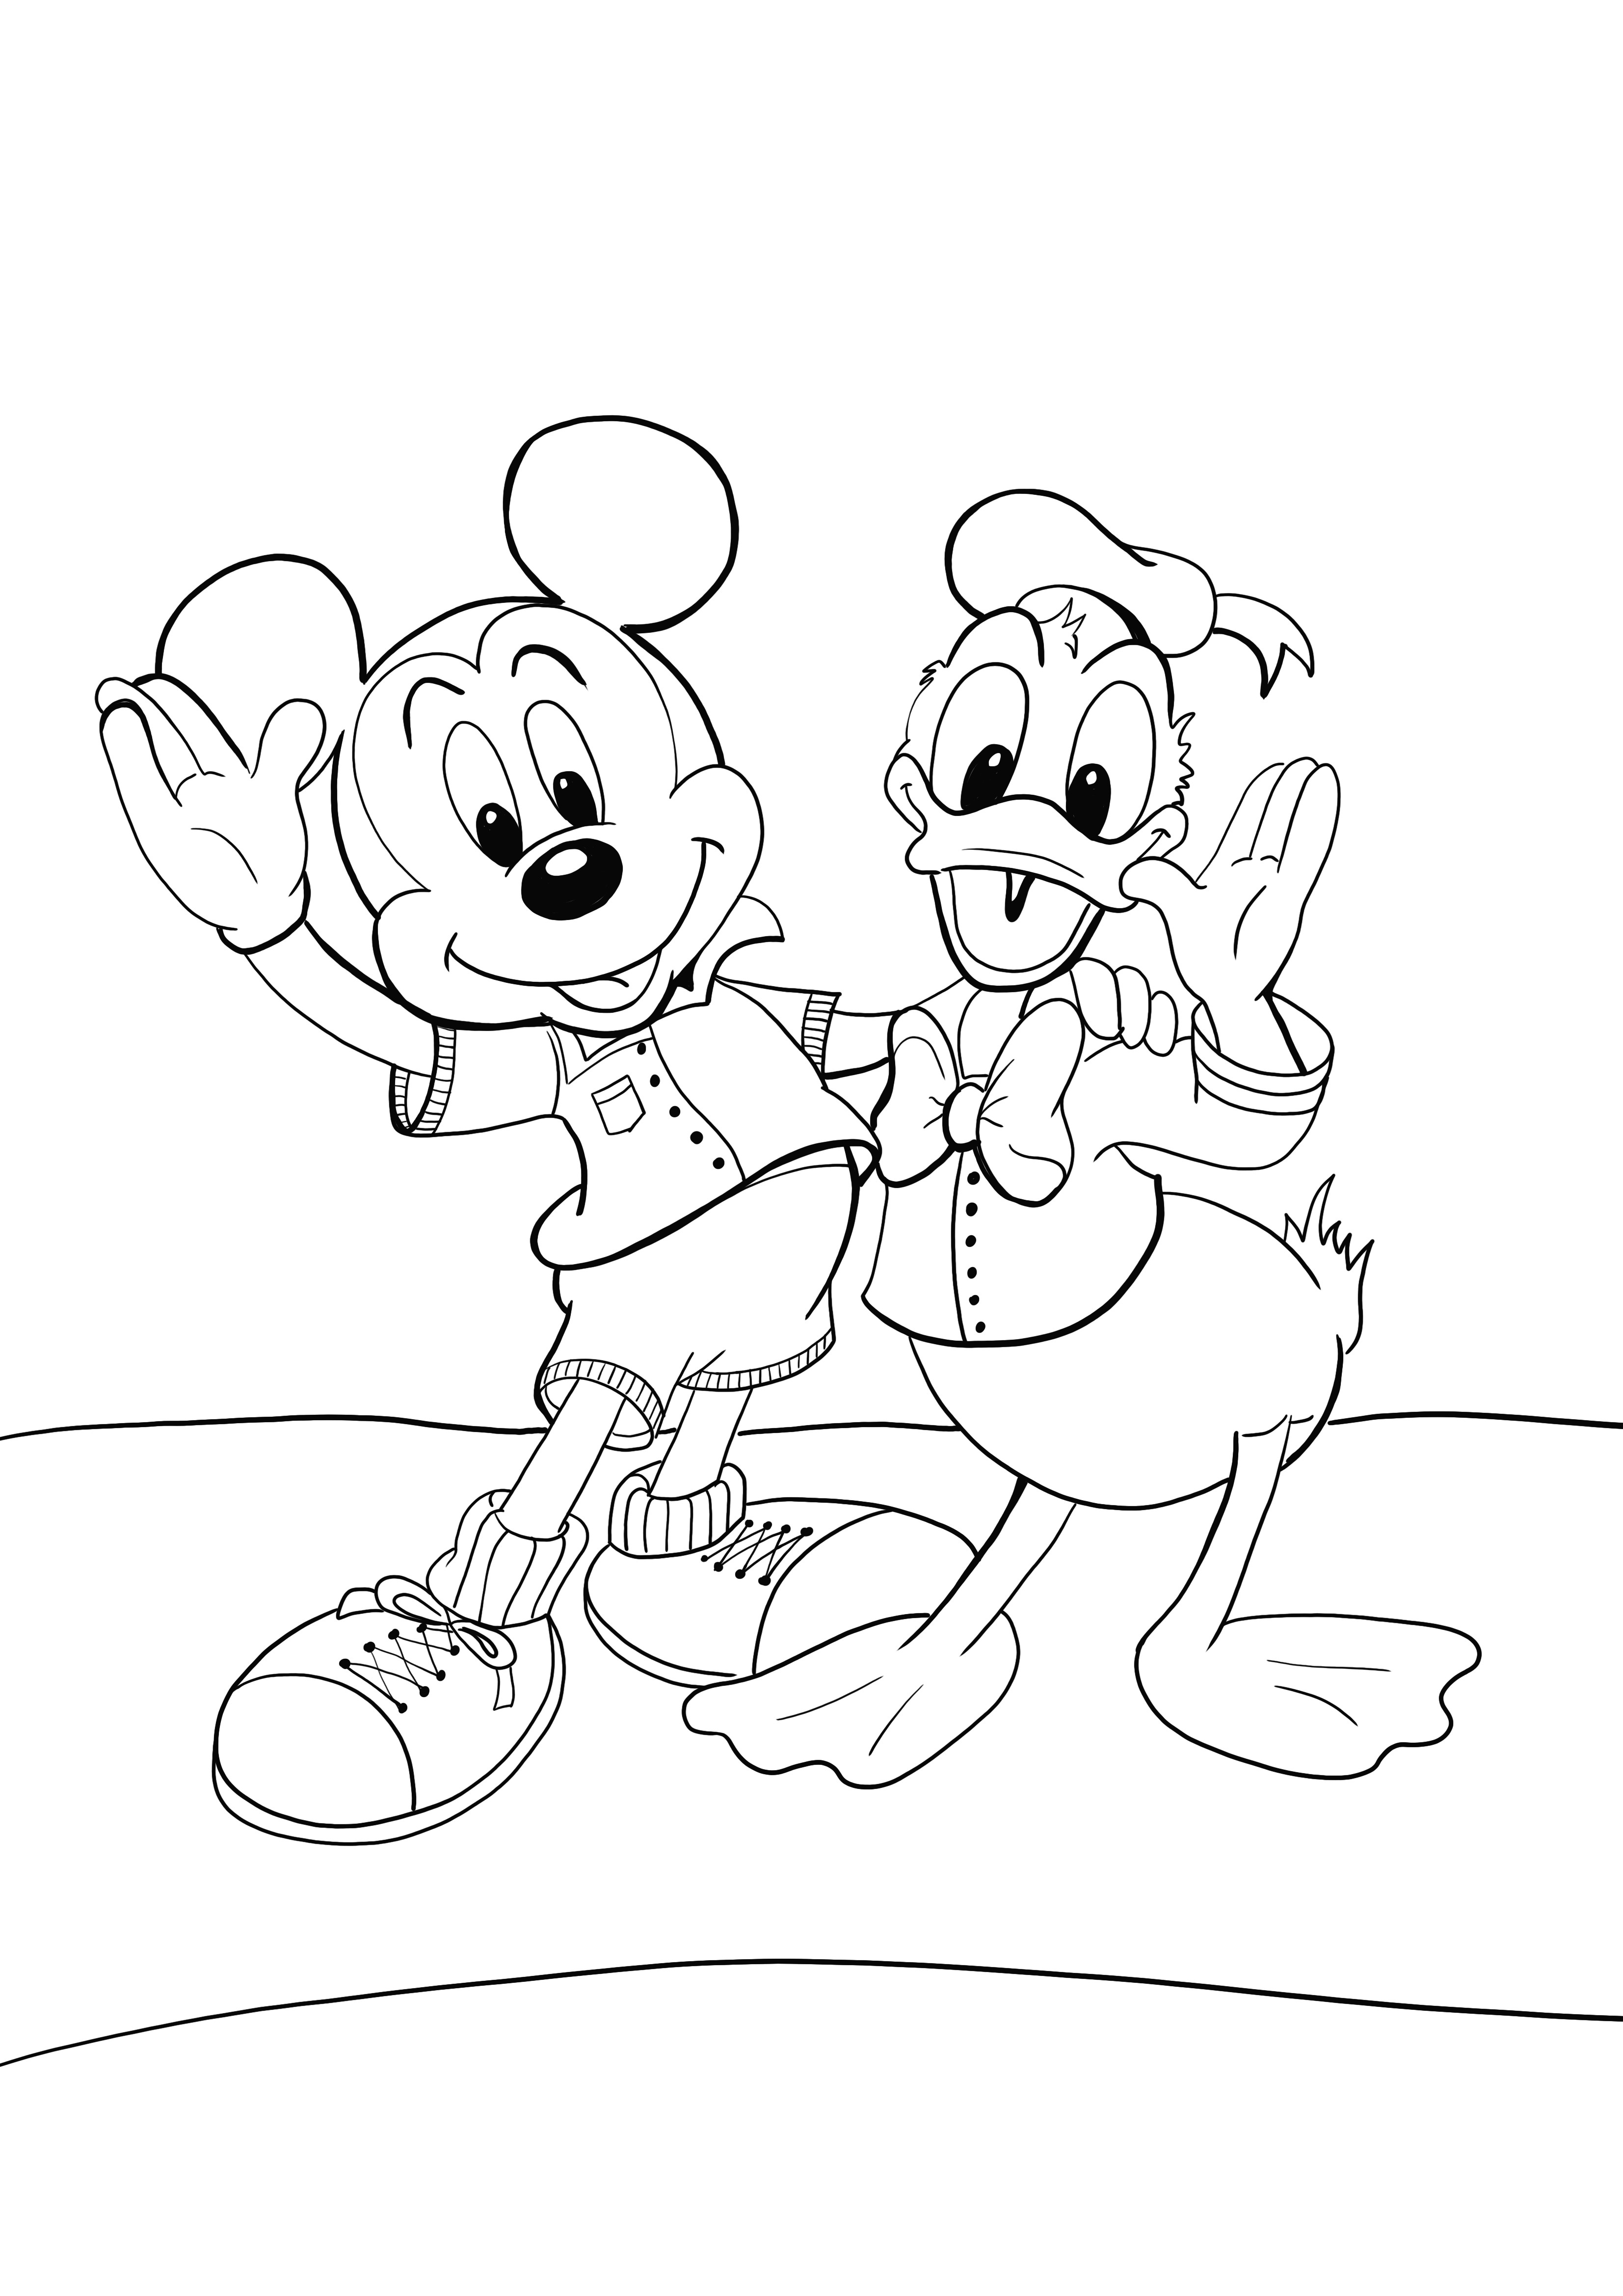 Gambar Mikey dan Donald favorit untuk diwarnai secara gratis